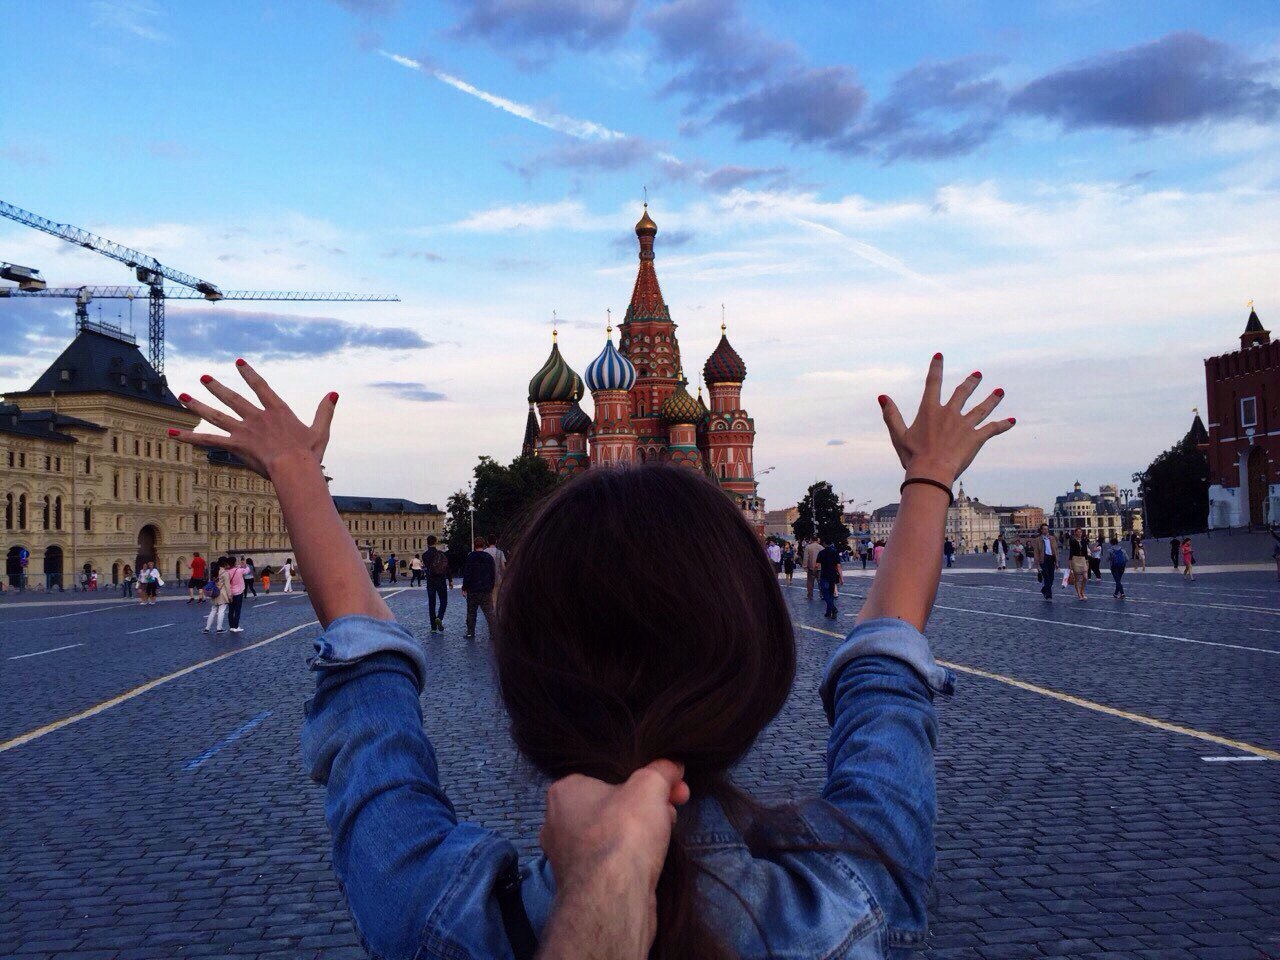 Тоскую по москве. Скучаю по Москве. Я В Москве. Хочу в Москву. Я В Москву я в Москве.